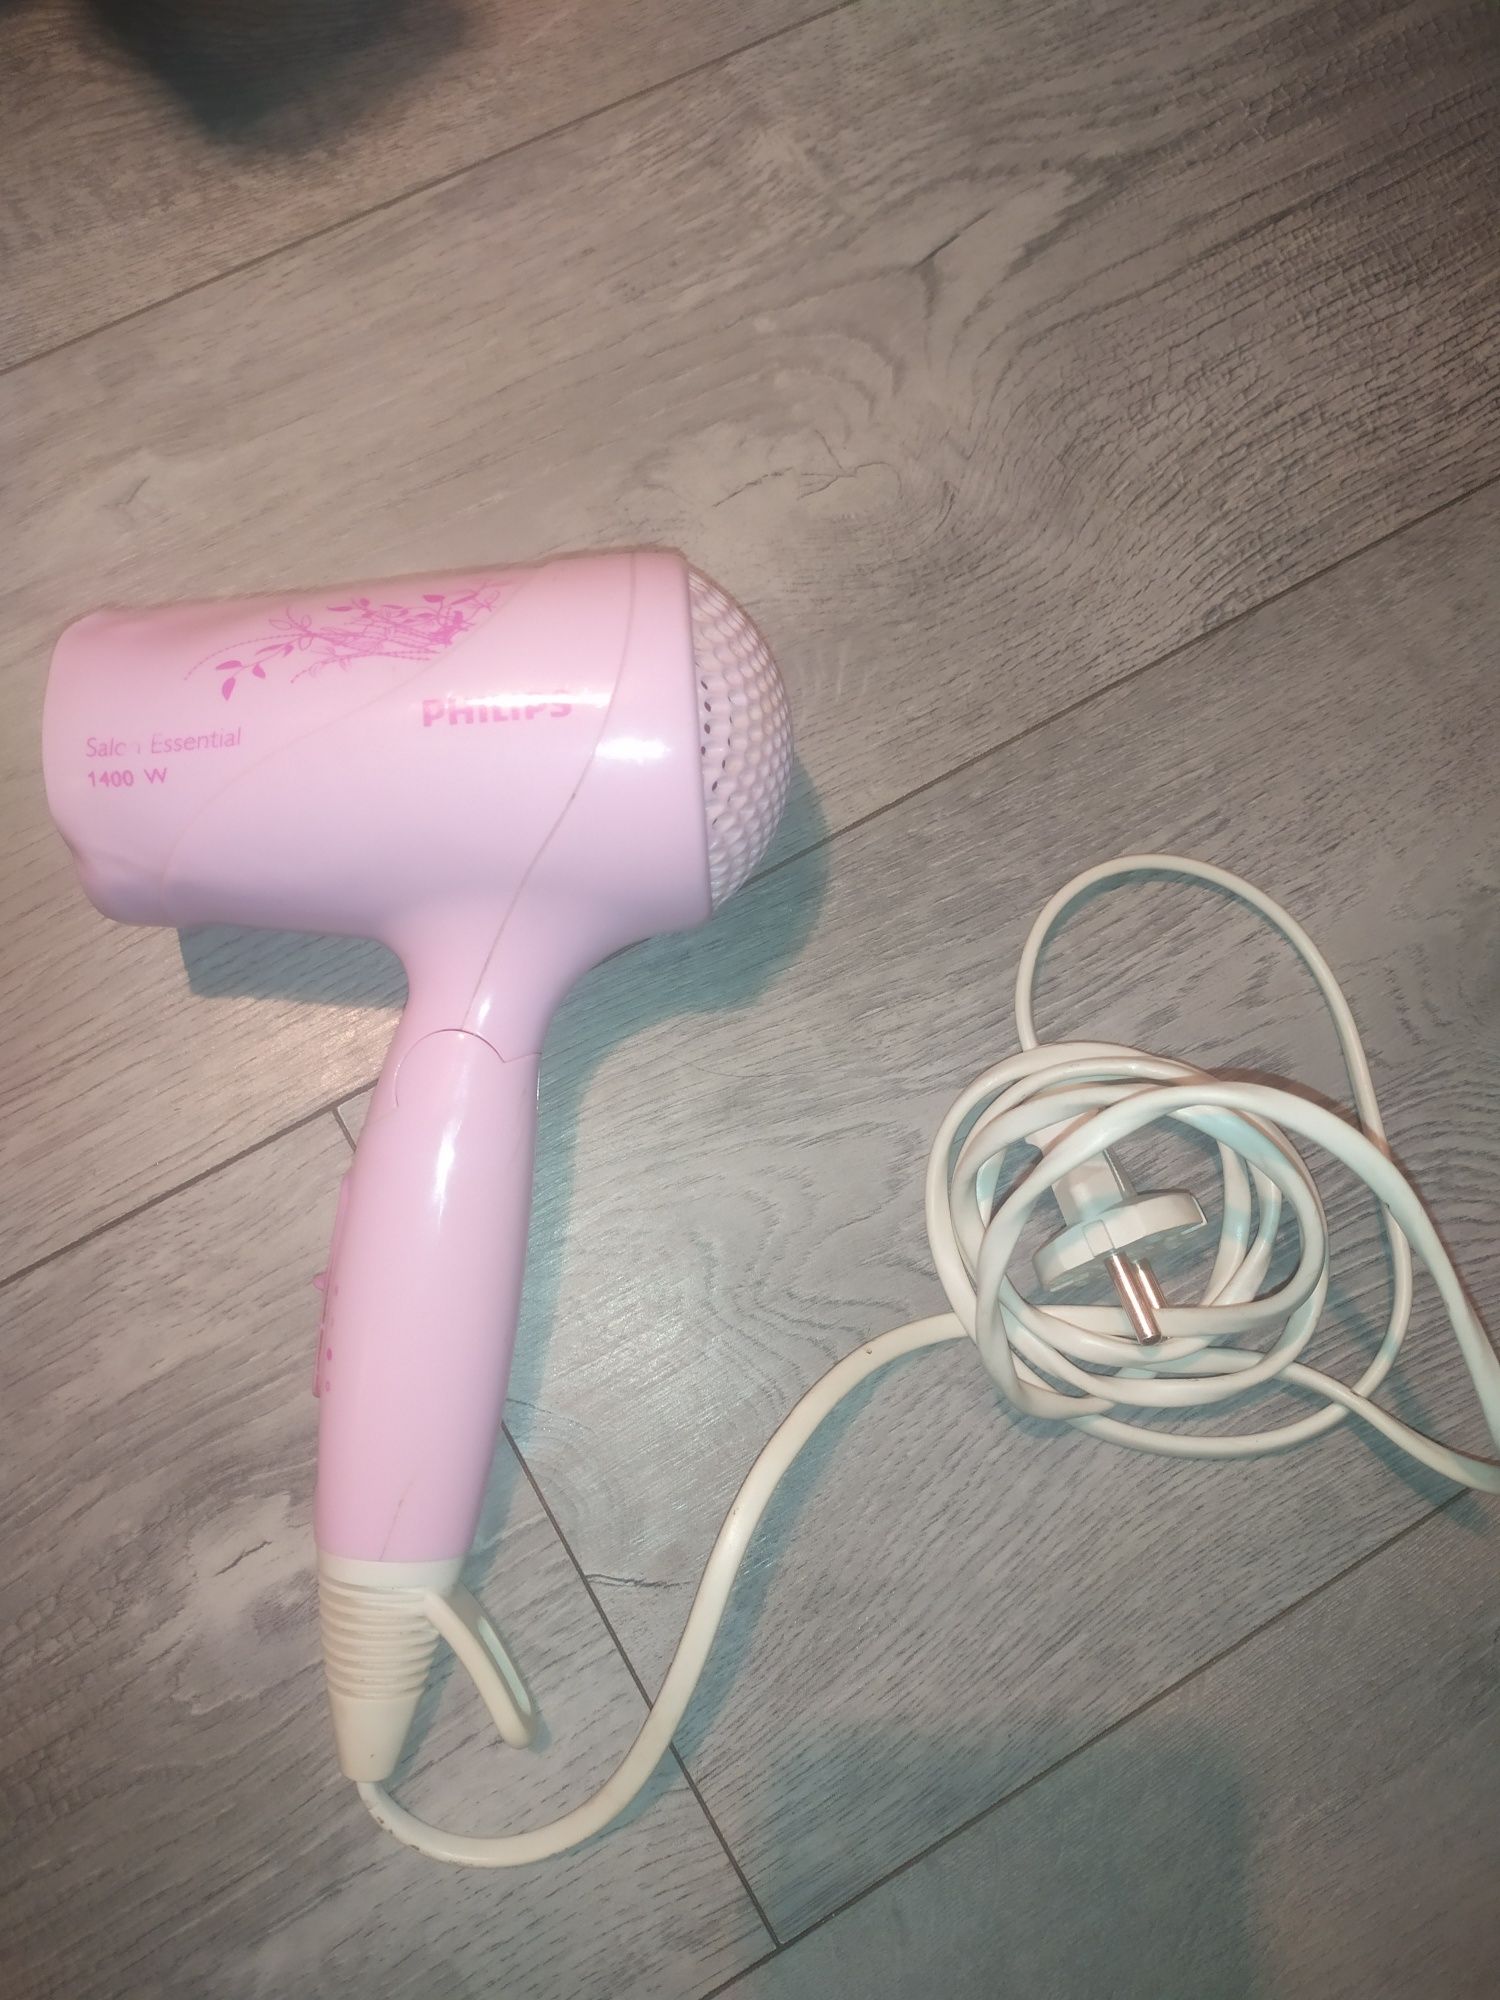 Różowa suszarka do włosów Philips Salon Essential NL 9206,  1400W